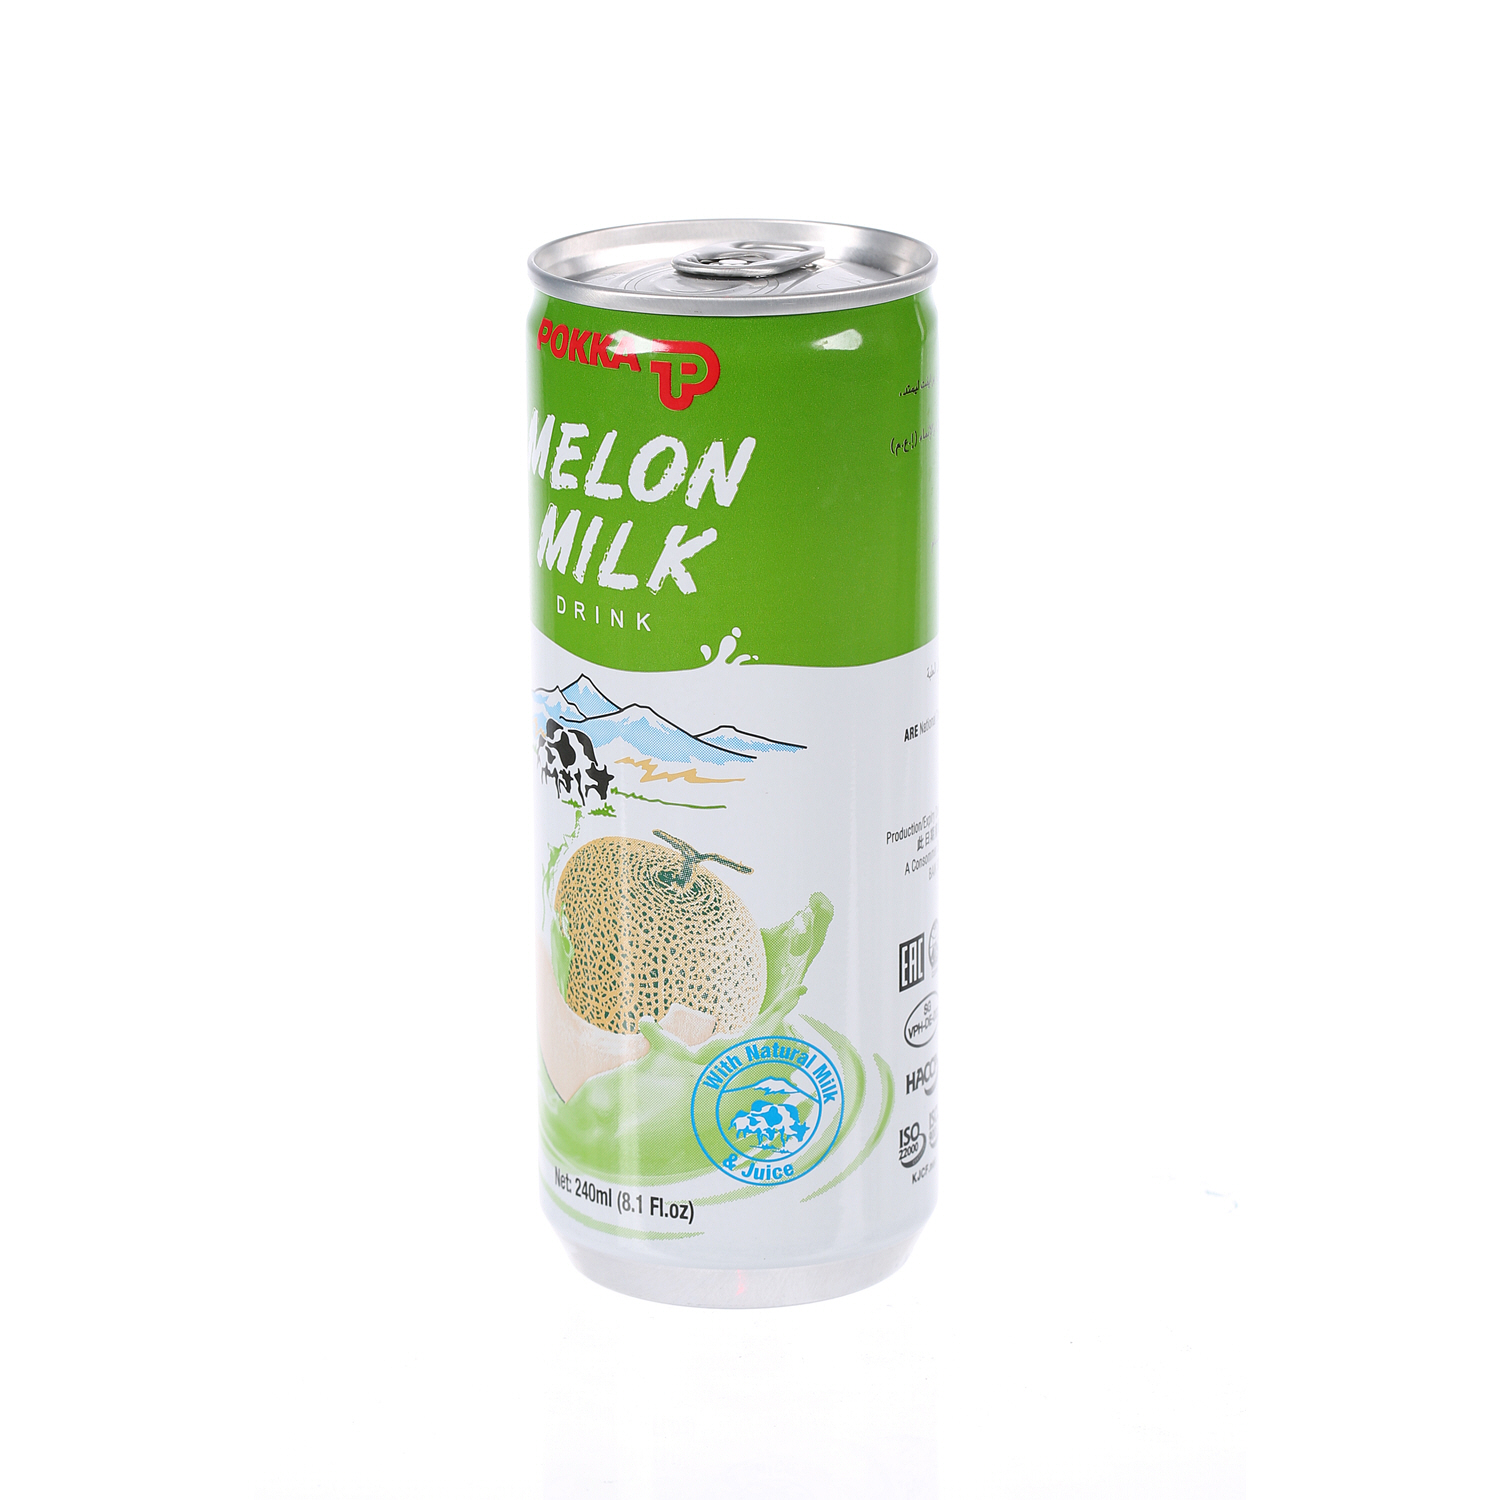 Pokka Melon Milk 240 ml